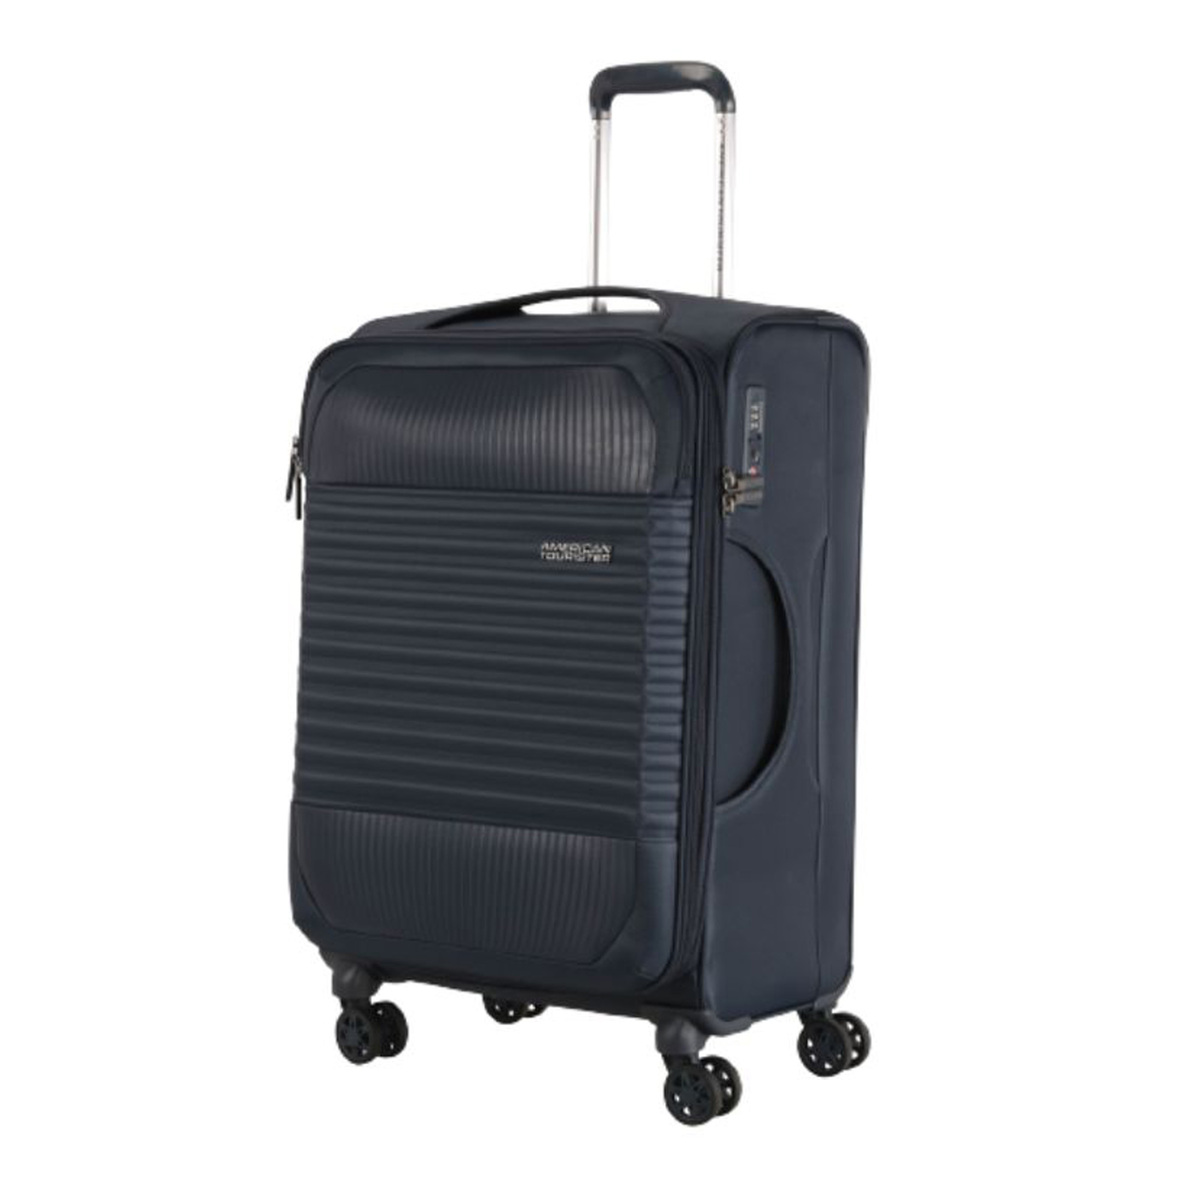 امريكان توريستر حقيبة سفر بعجلات مرنة فورناكس سبينر مع قفل TSA، 66 سم، كحلي